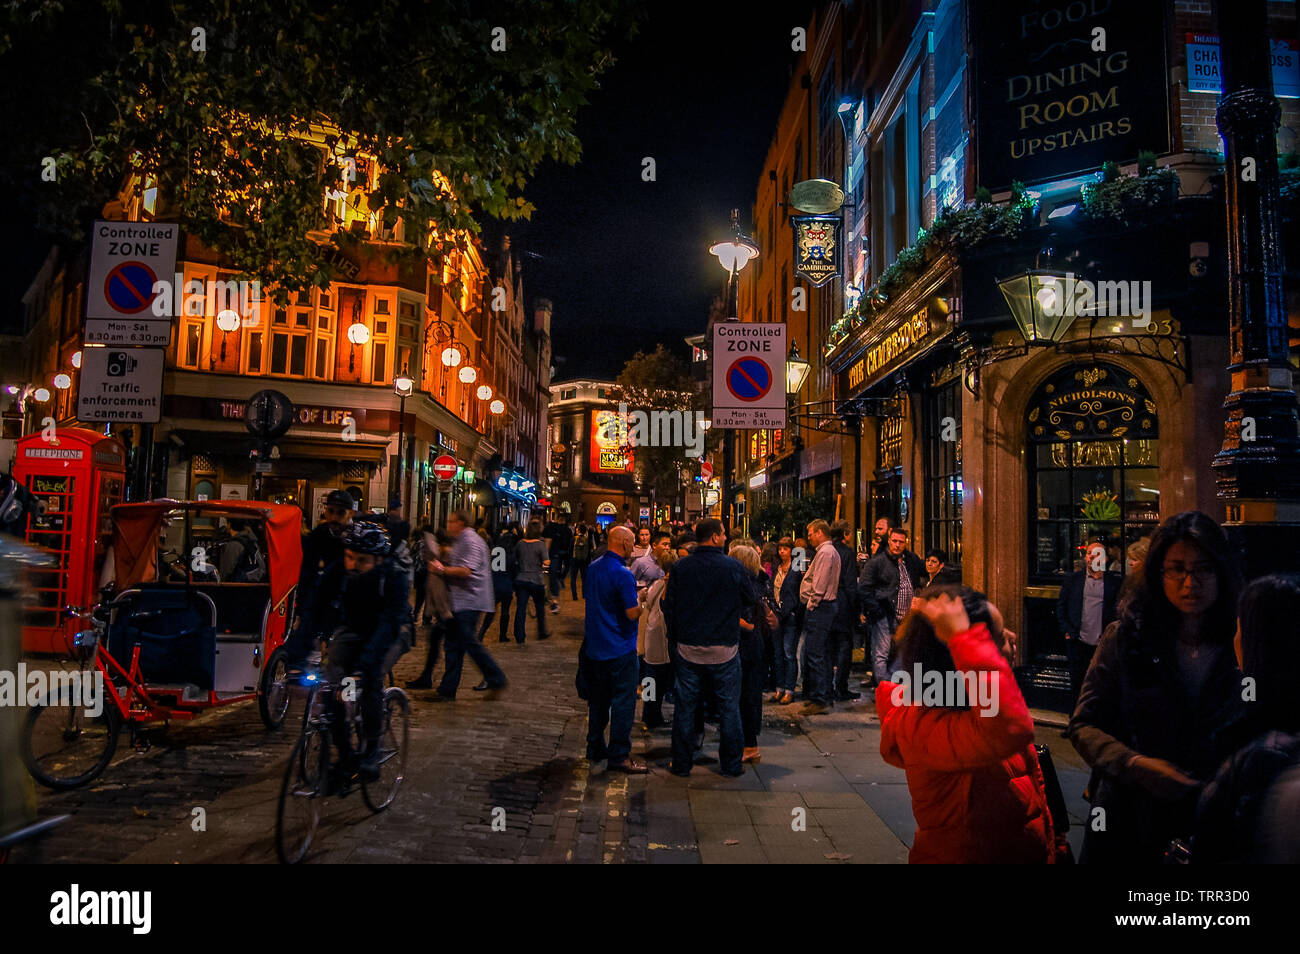 La vie nocturne dans les rues de Soho London,UK Banque D'Images